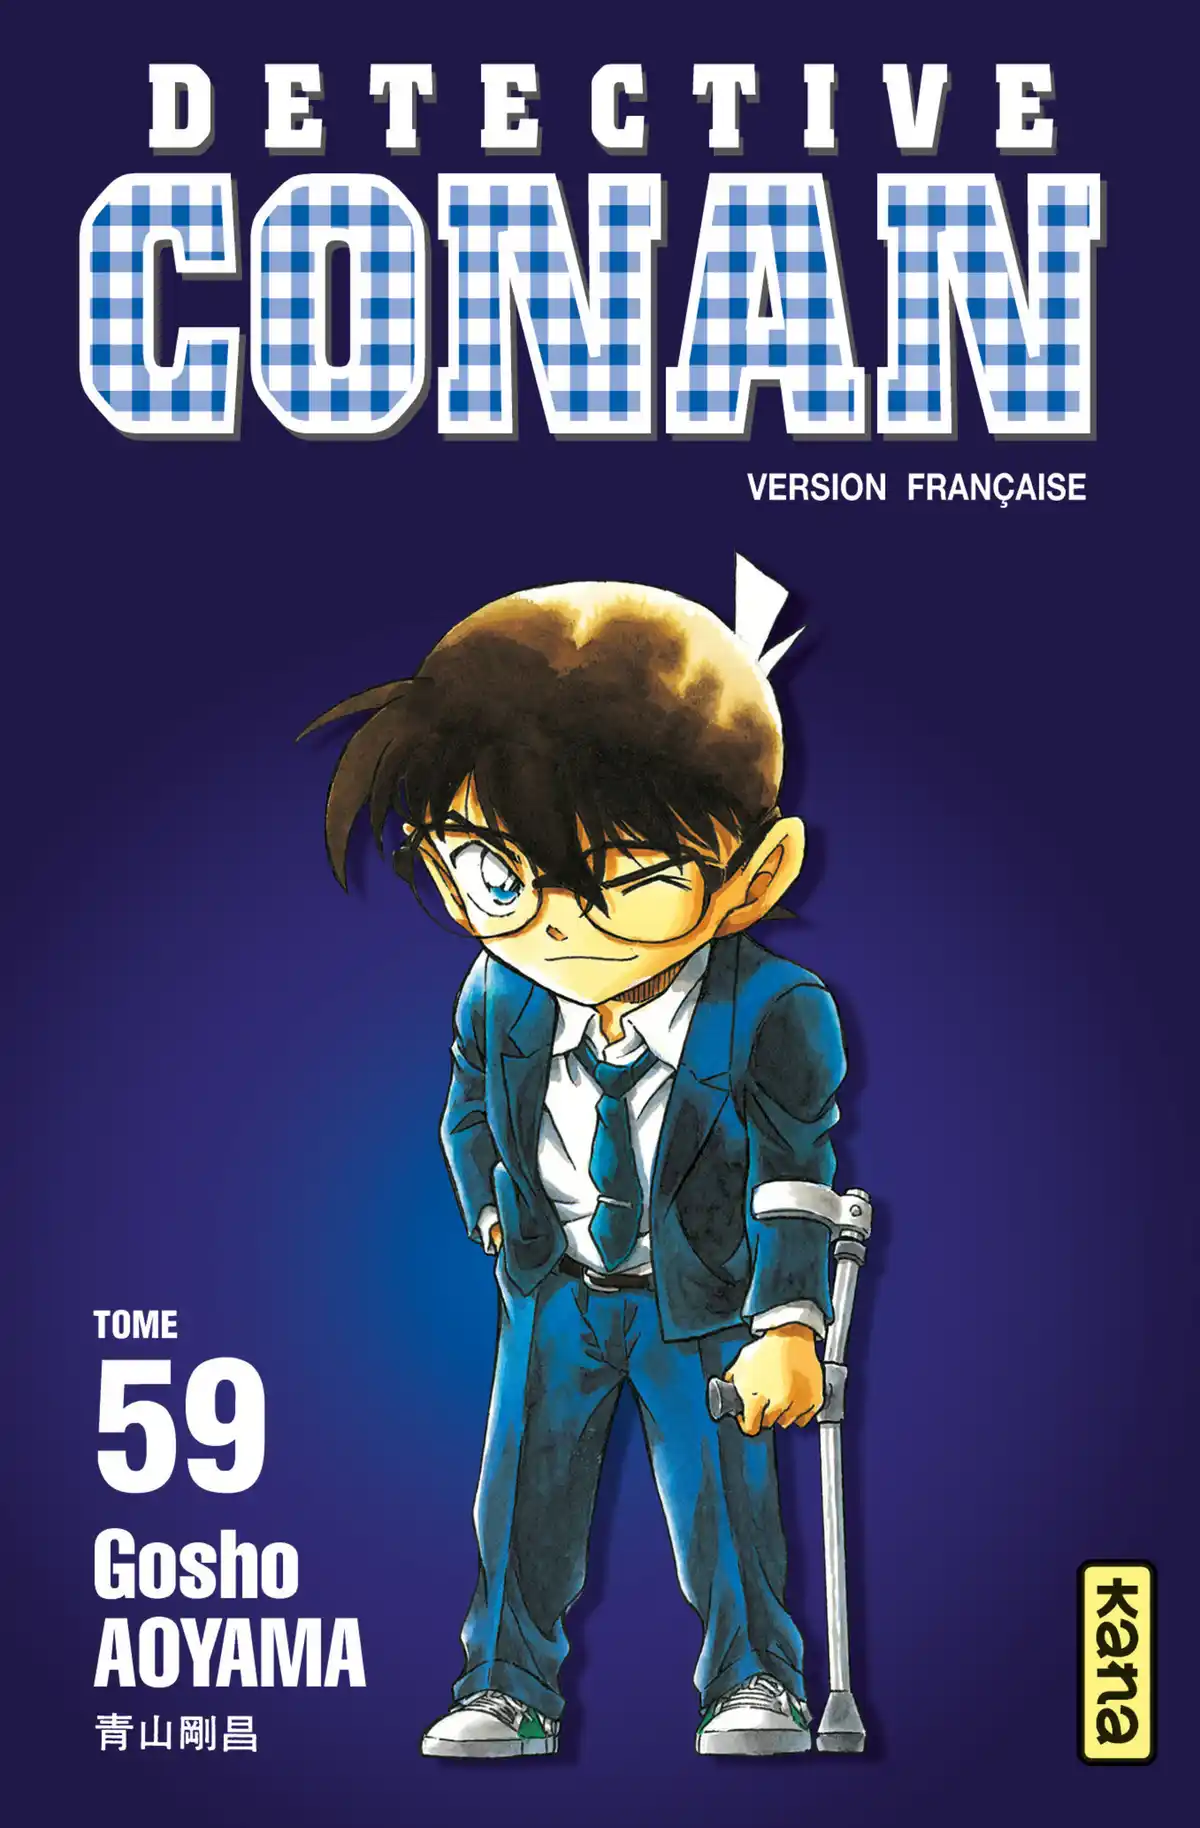 Détective Conan Volume 59 page 1